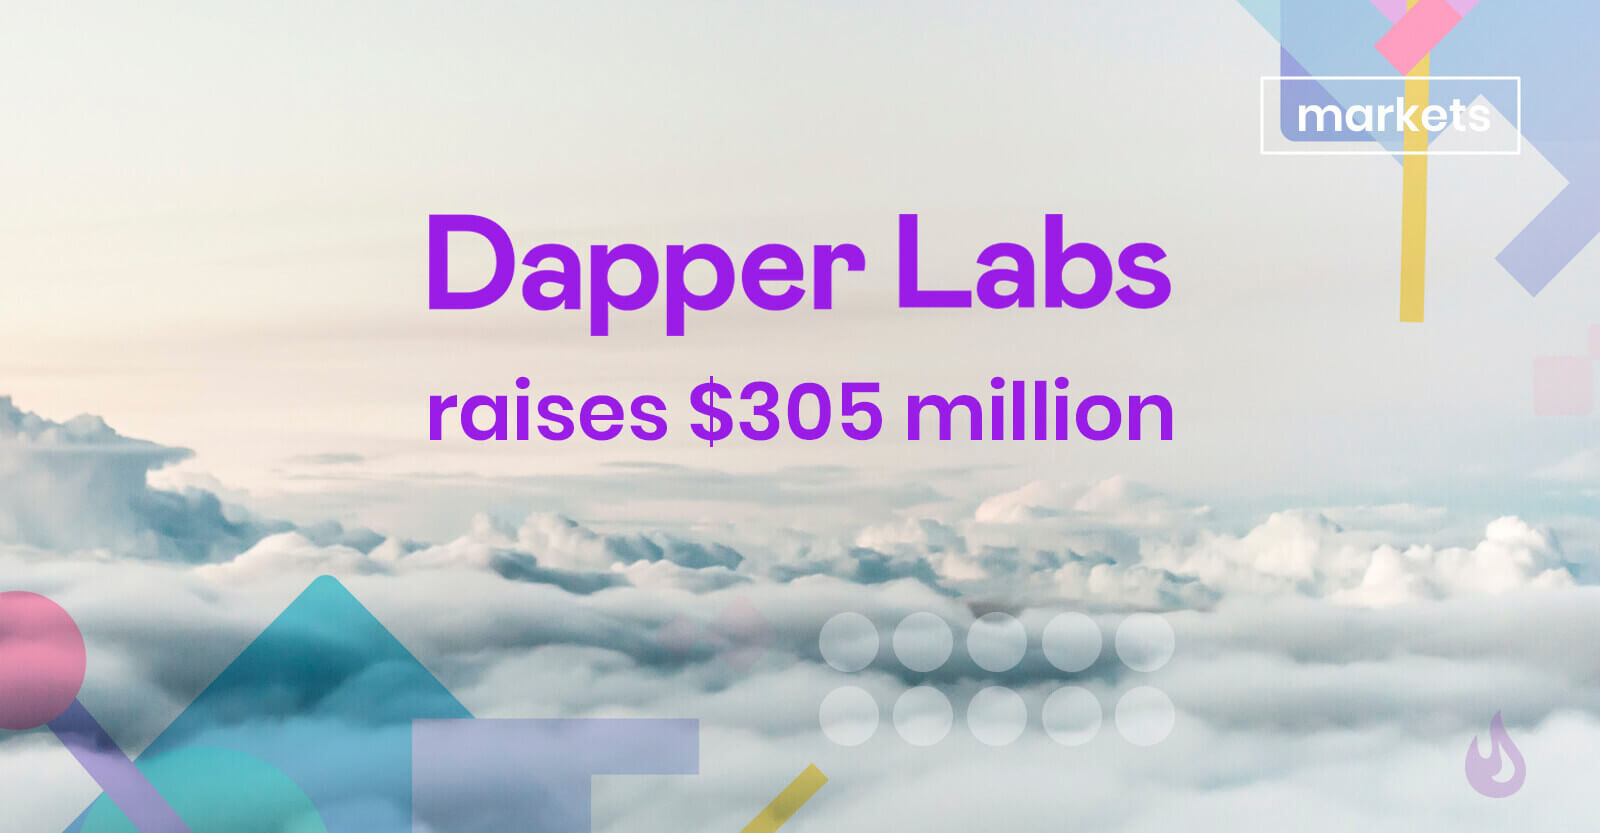 Dapper labs 305 million